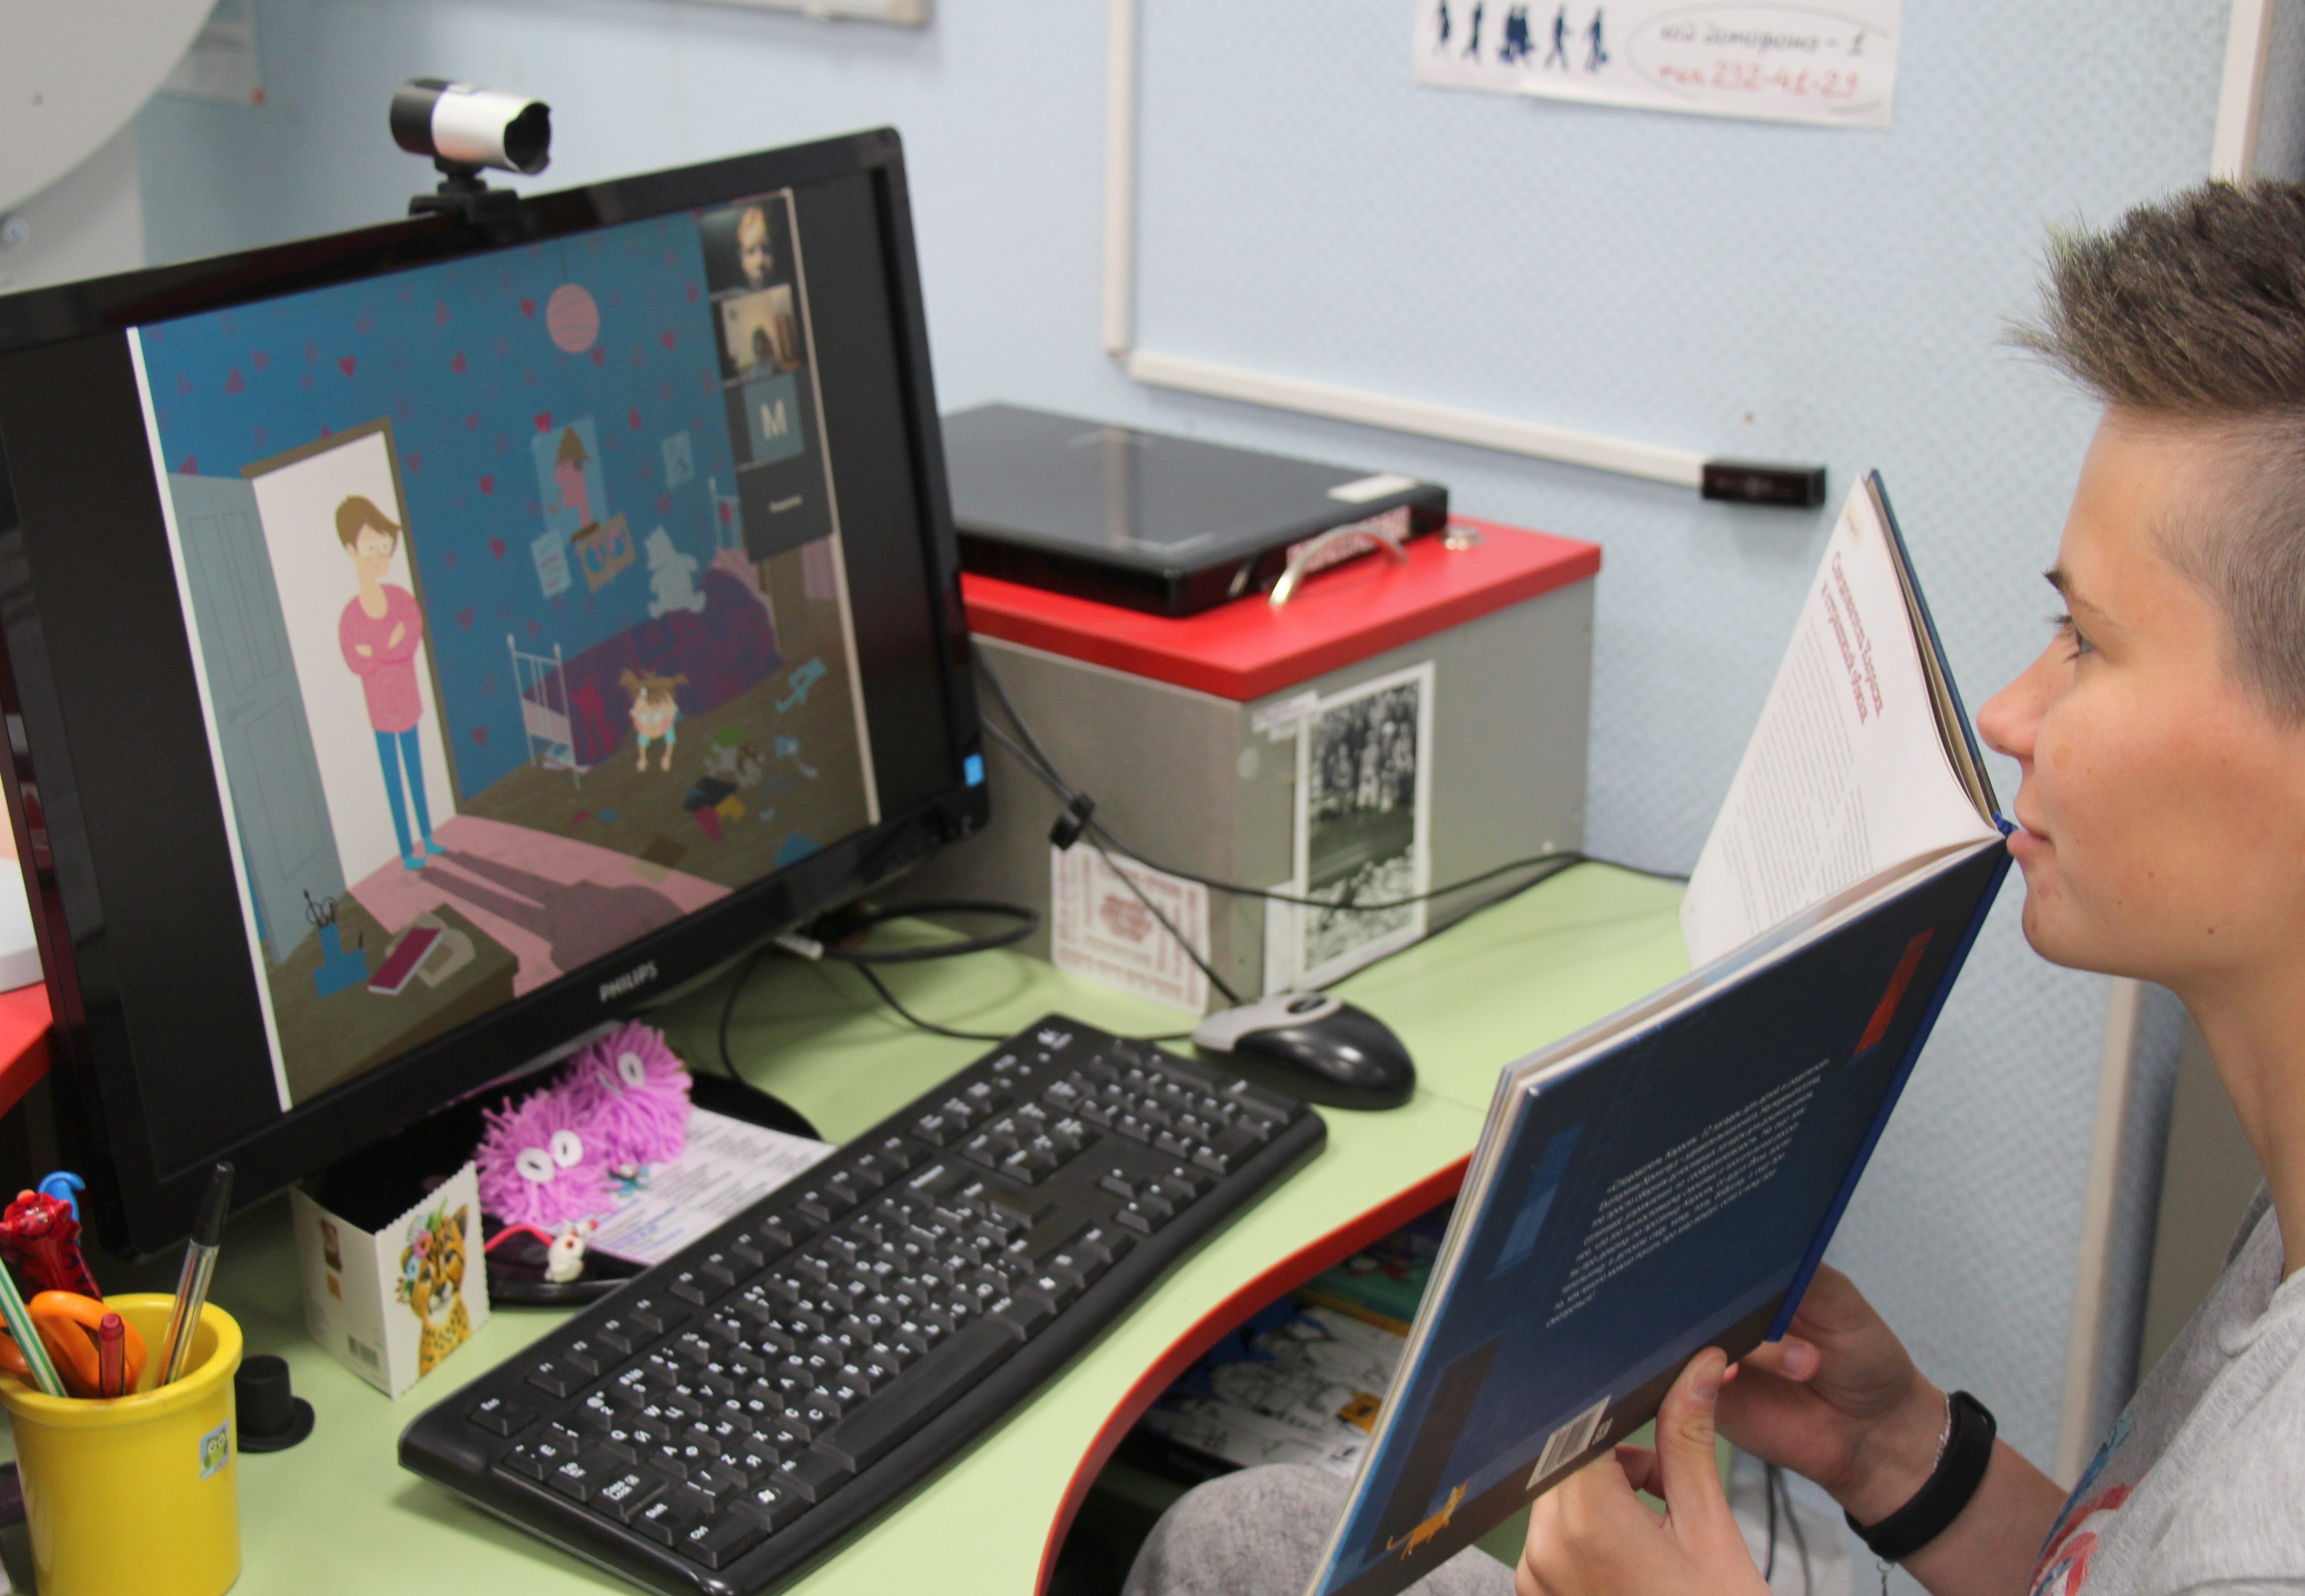 Центральная детская библиотека Петроградского района (Большой пр. П.С., 65) продолжает проводить онлайн-занятия на платформе Zoom для детей дошкольного и школьного возраста.